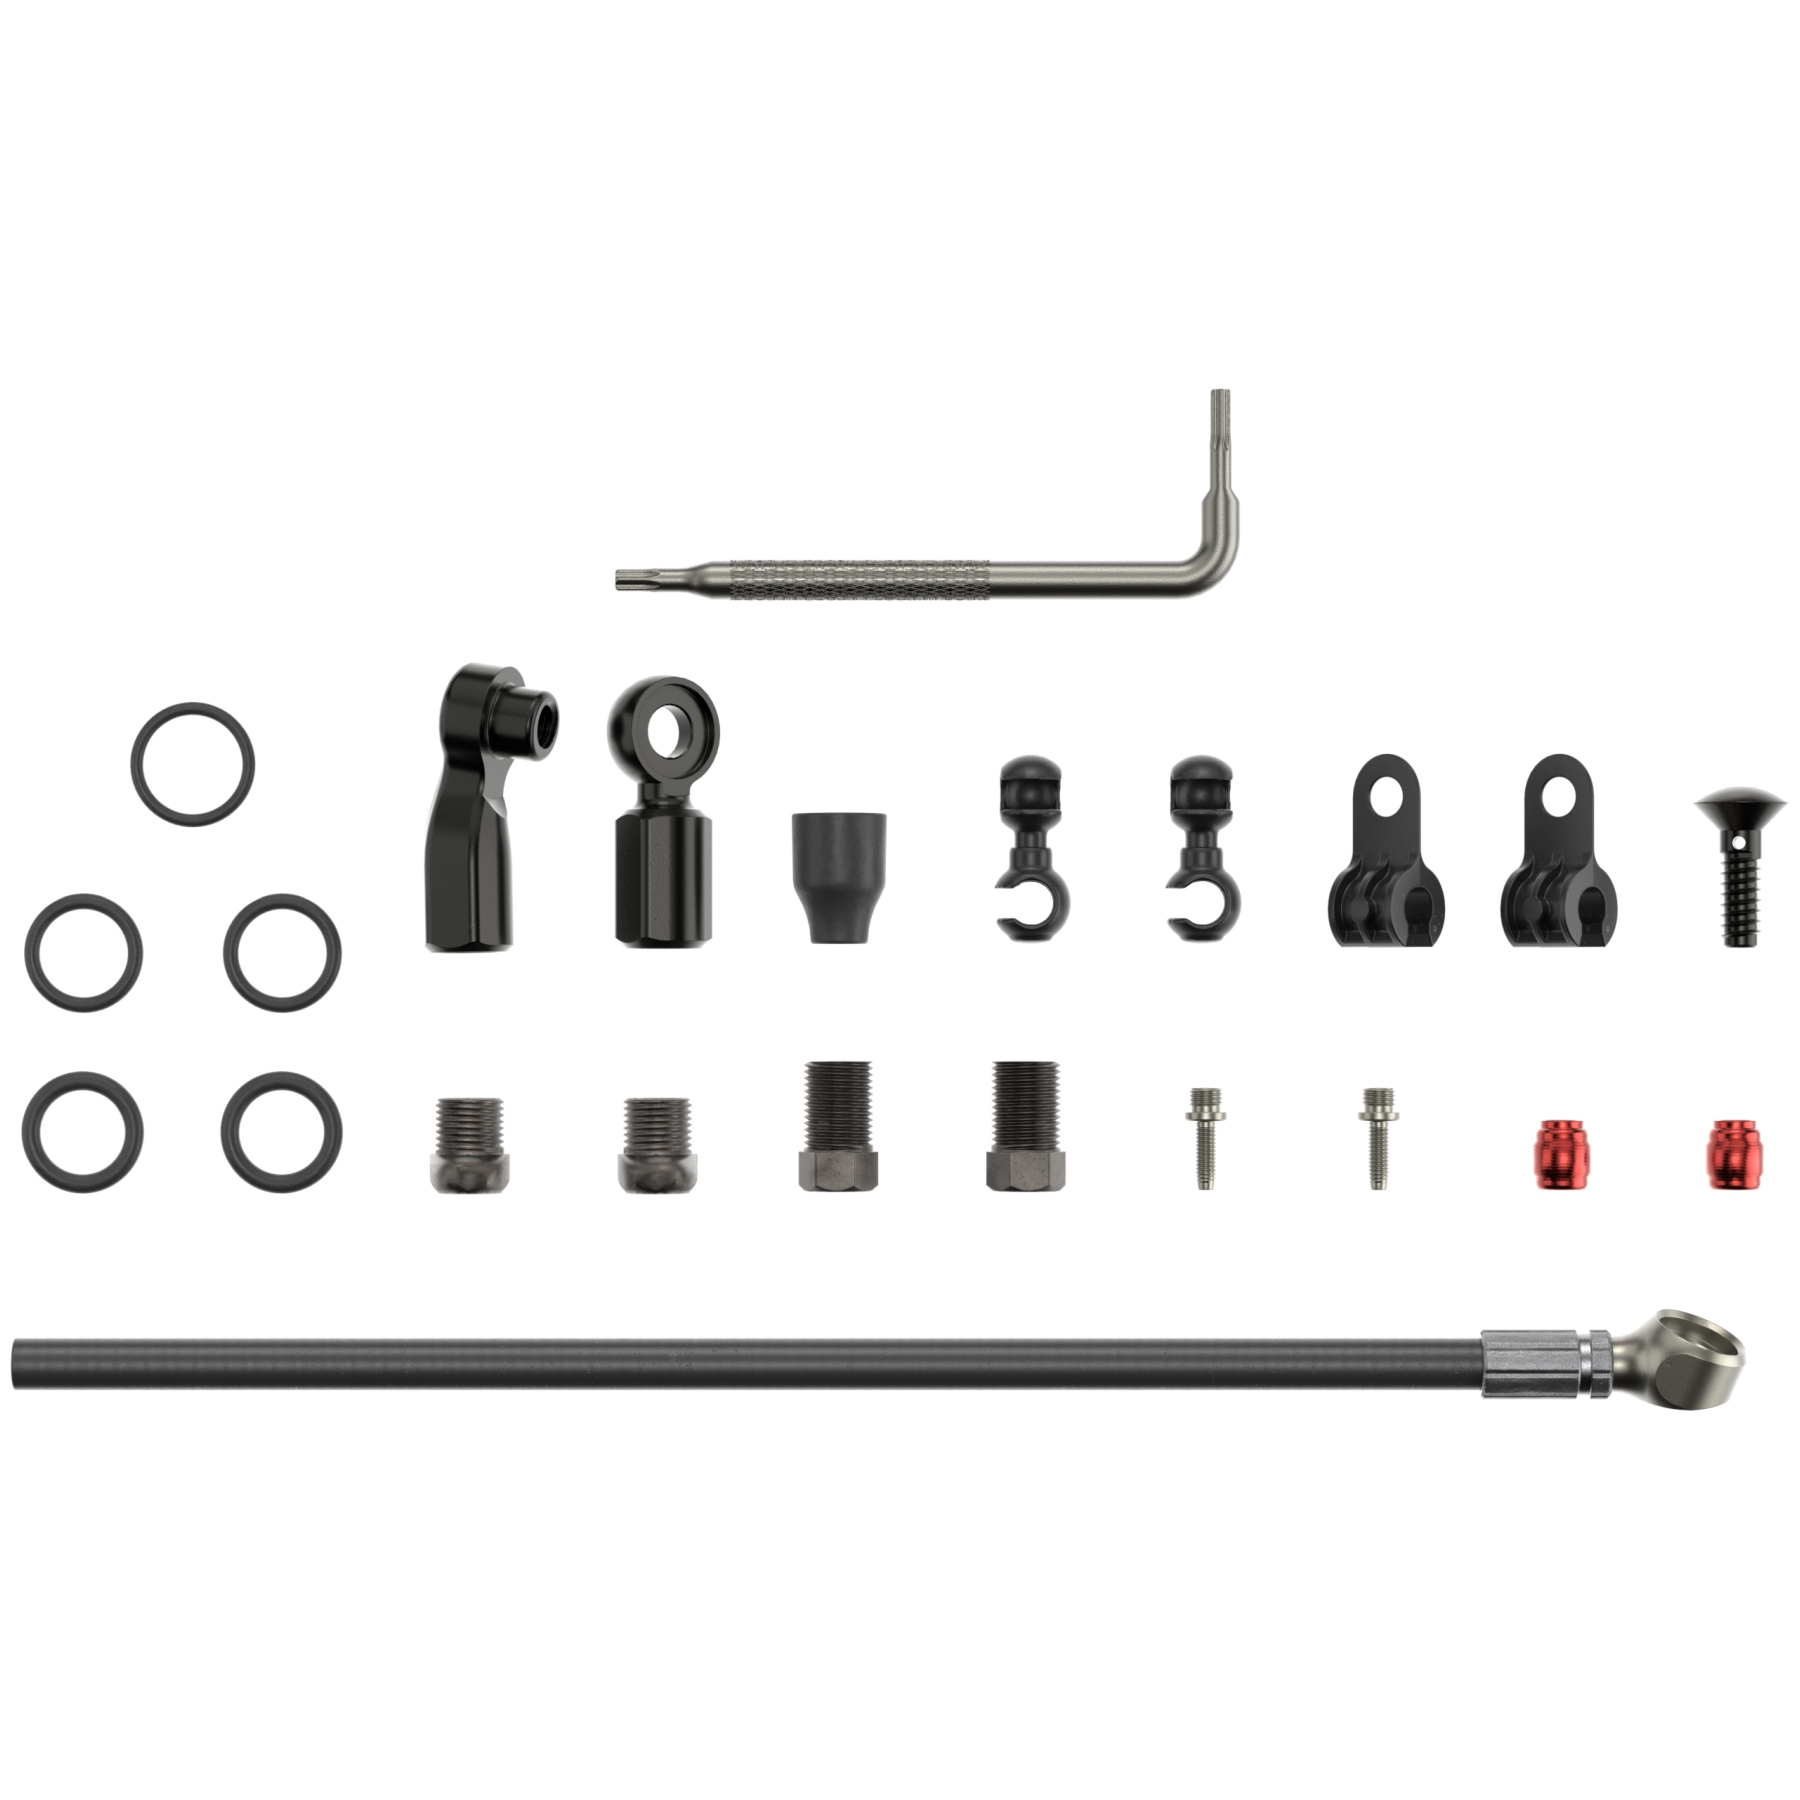 Produktbild von SRAM Bremsleitungs-Kit - Beveled Banjo | 2000mm - AC-HYD-BLVB-A1 | 00.5318.040.000